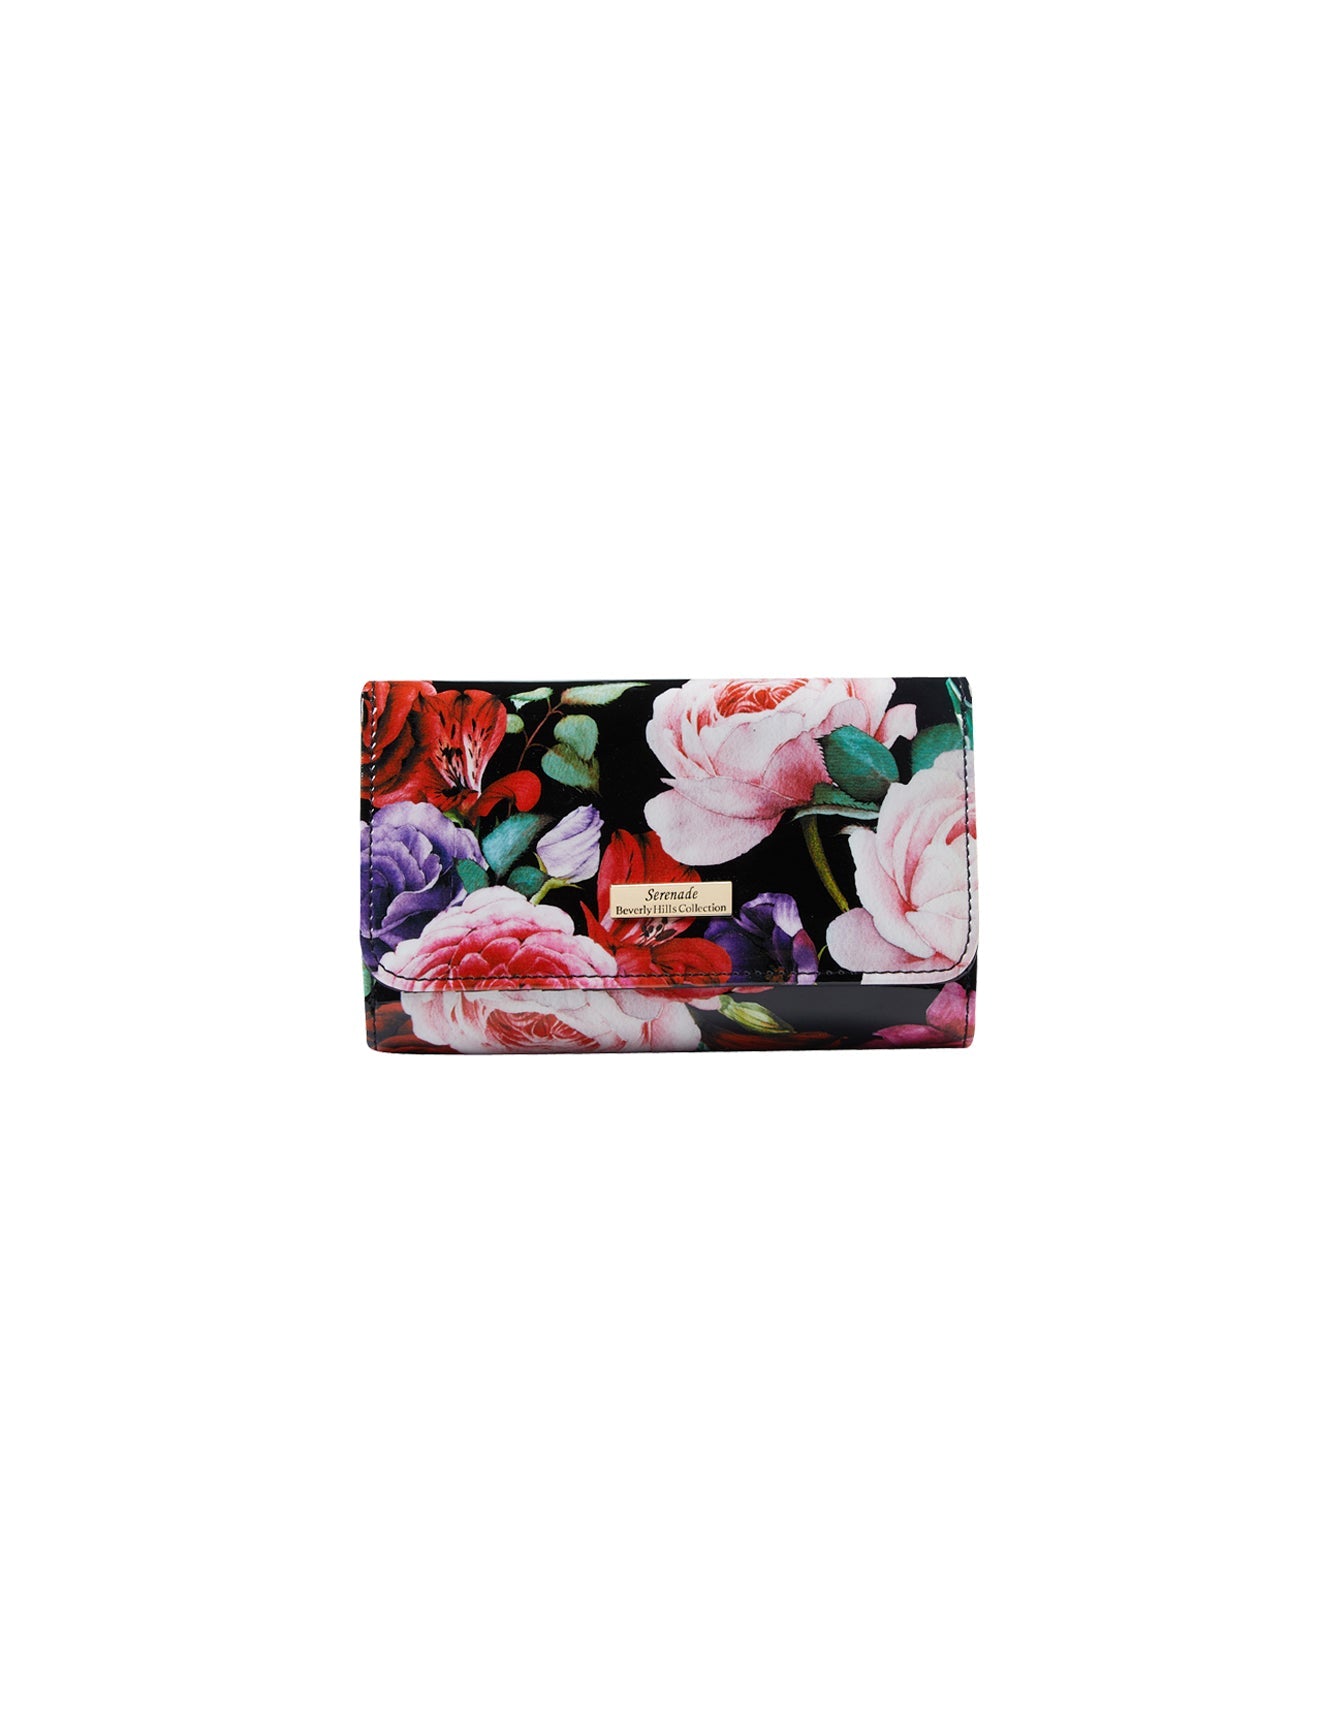 Serenade - Scarlett WSN-4202 Leather Wallet - Medium-1